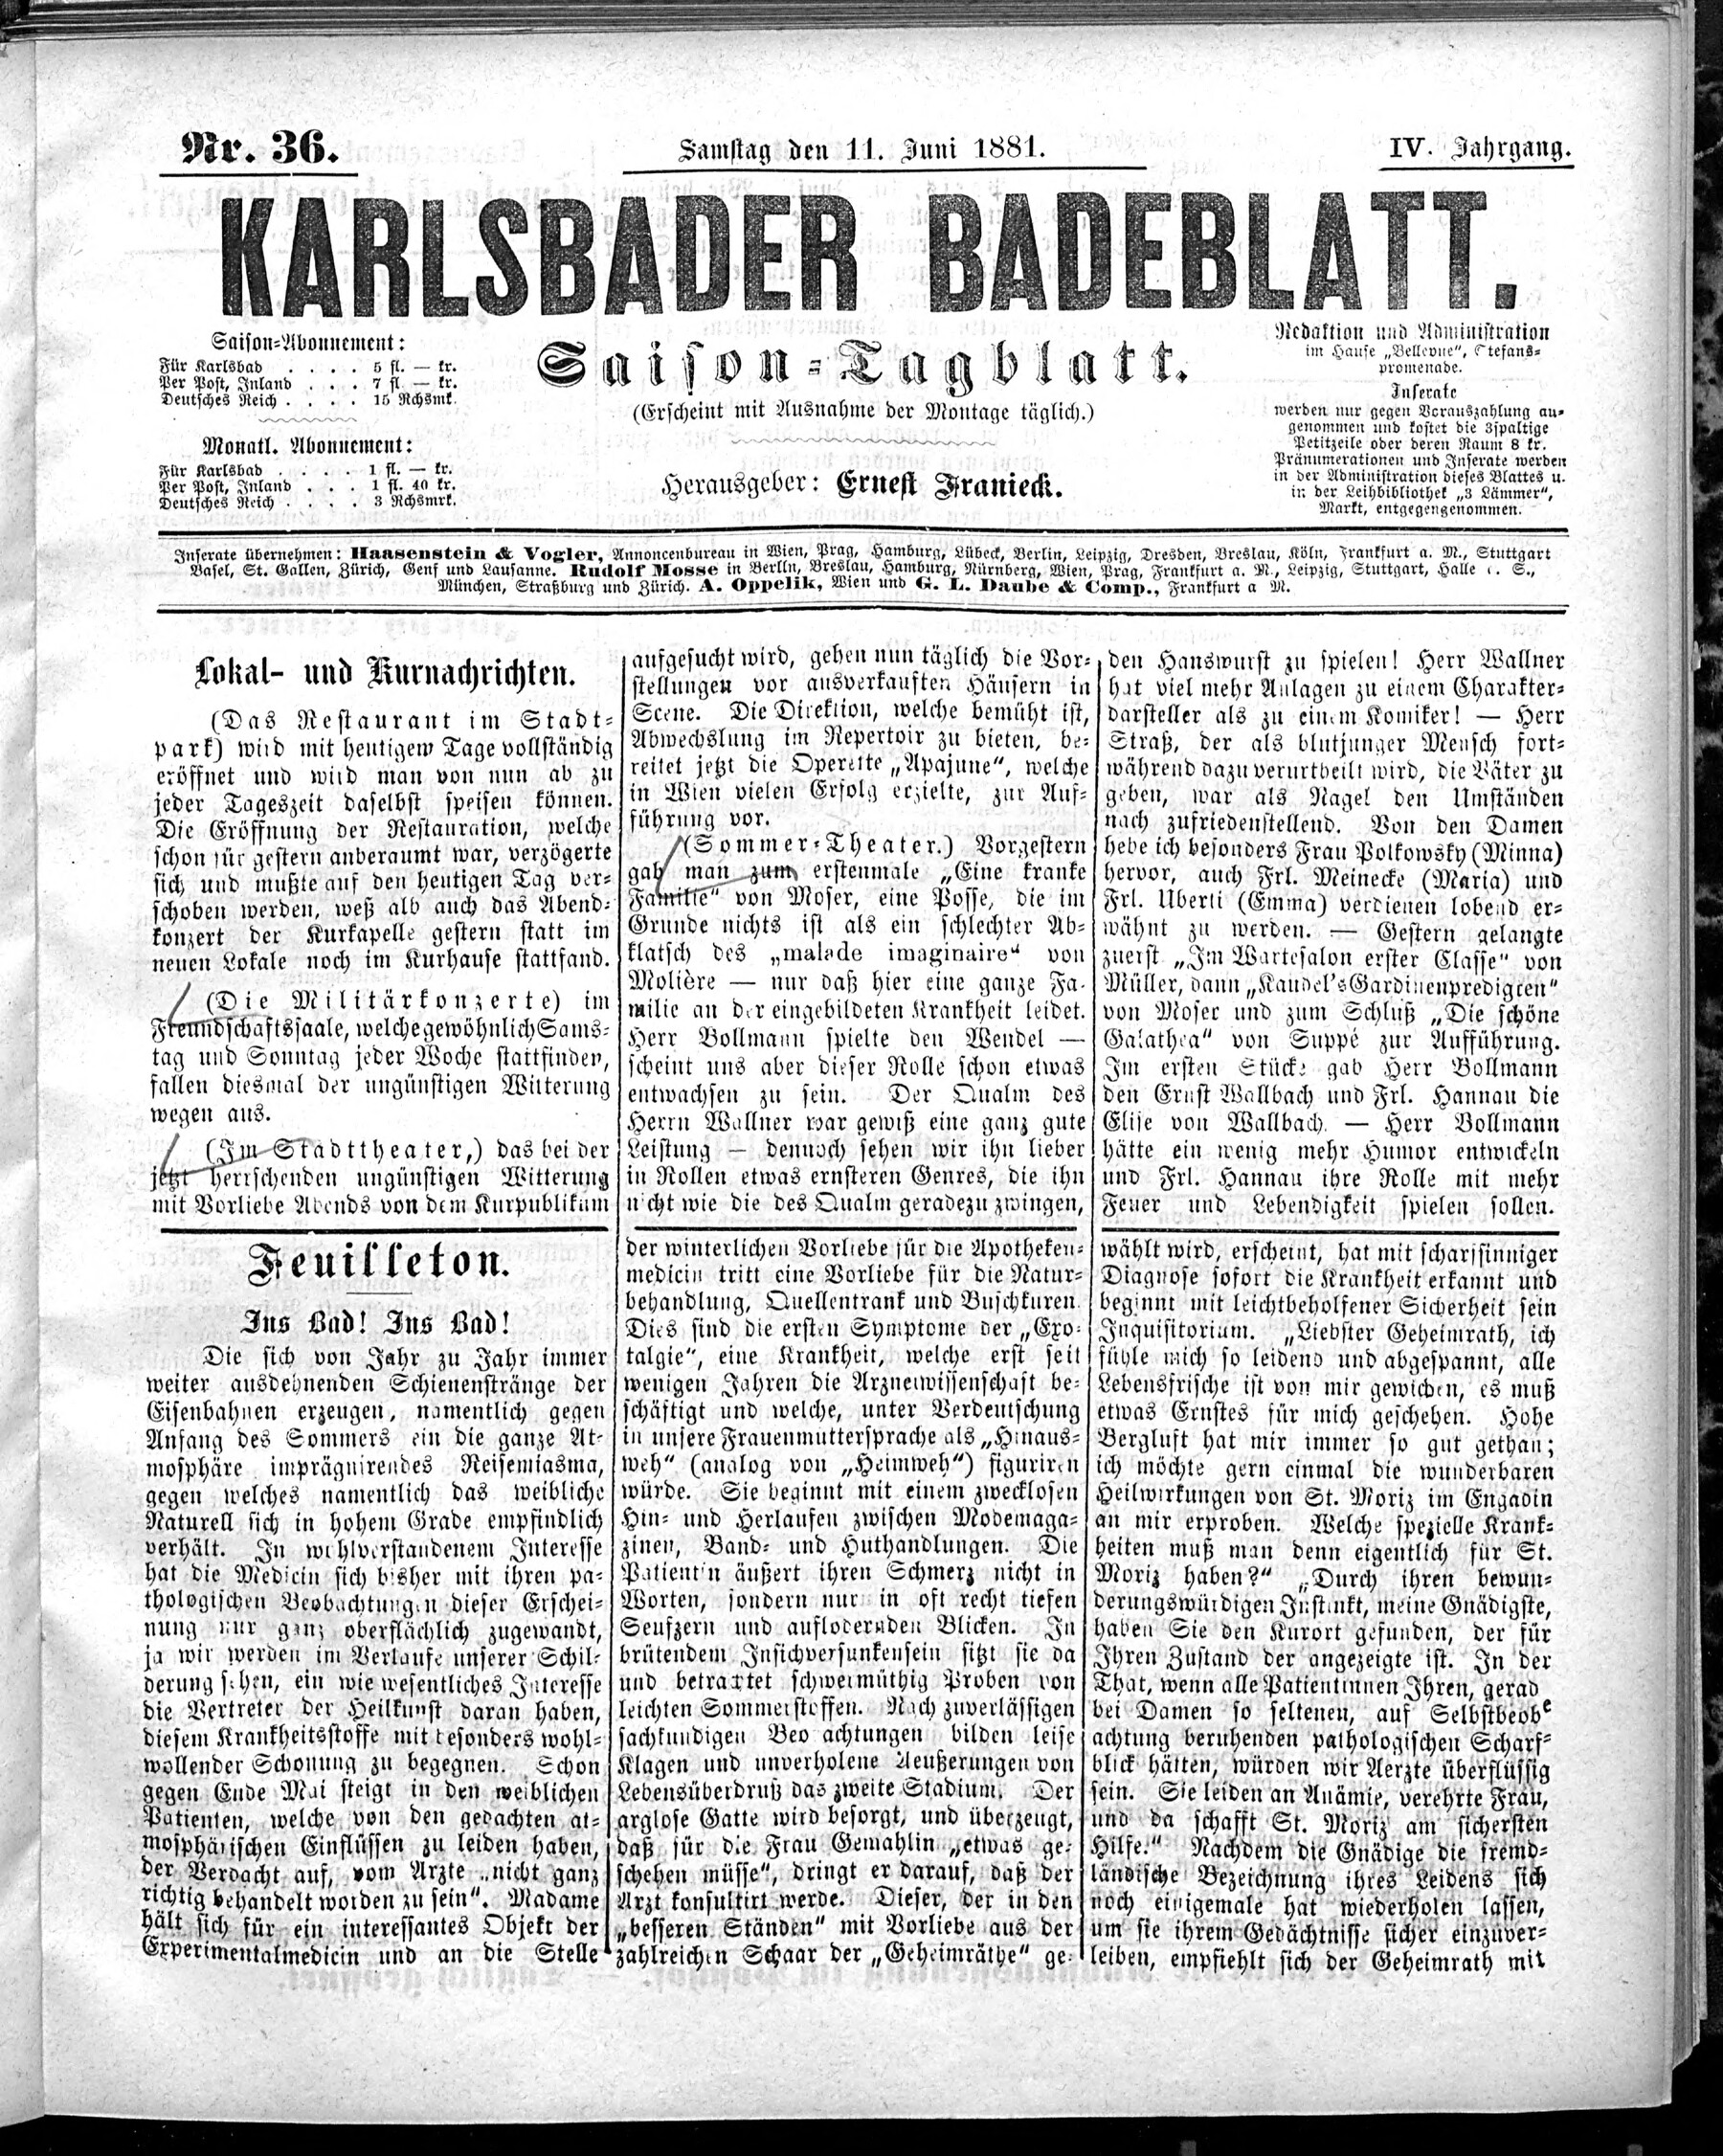 1. karlsbader-badeblatt-1881-06-11-n36_0765